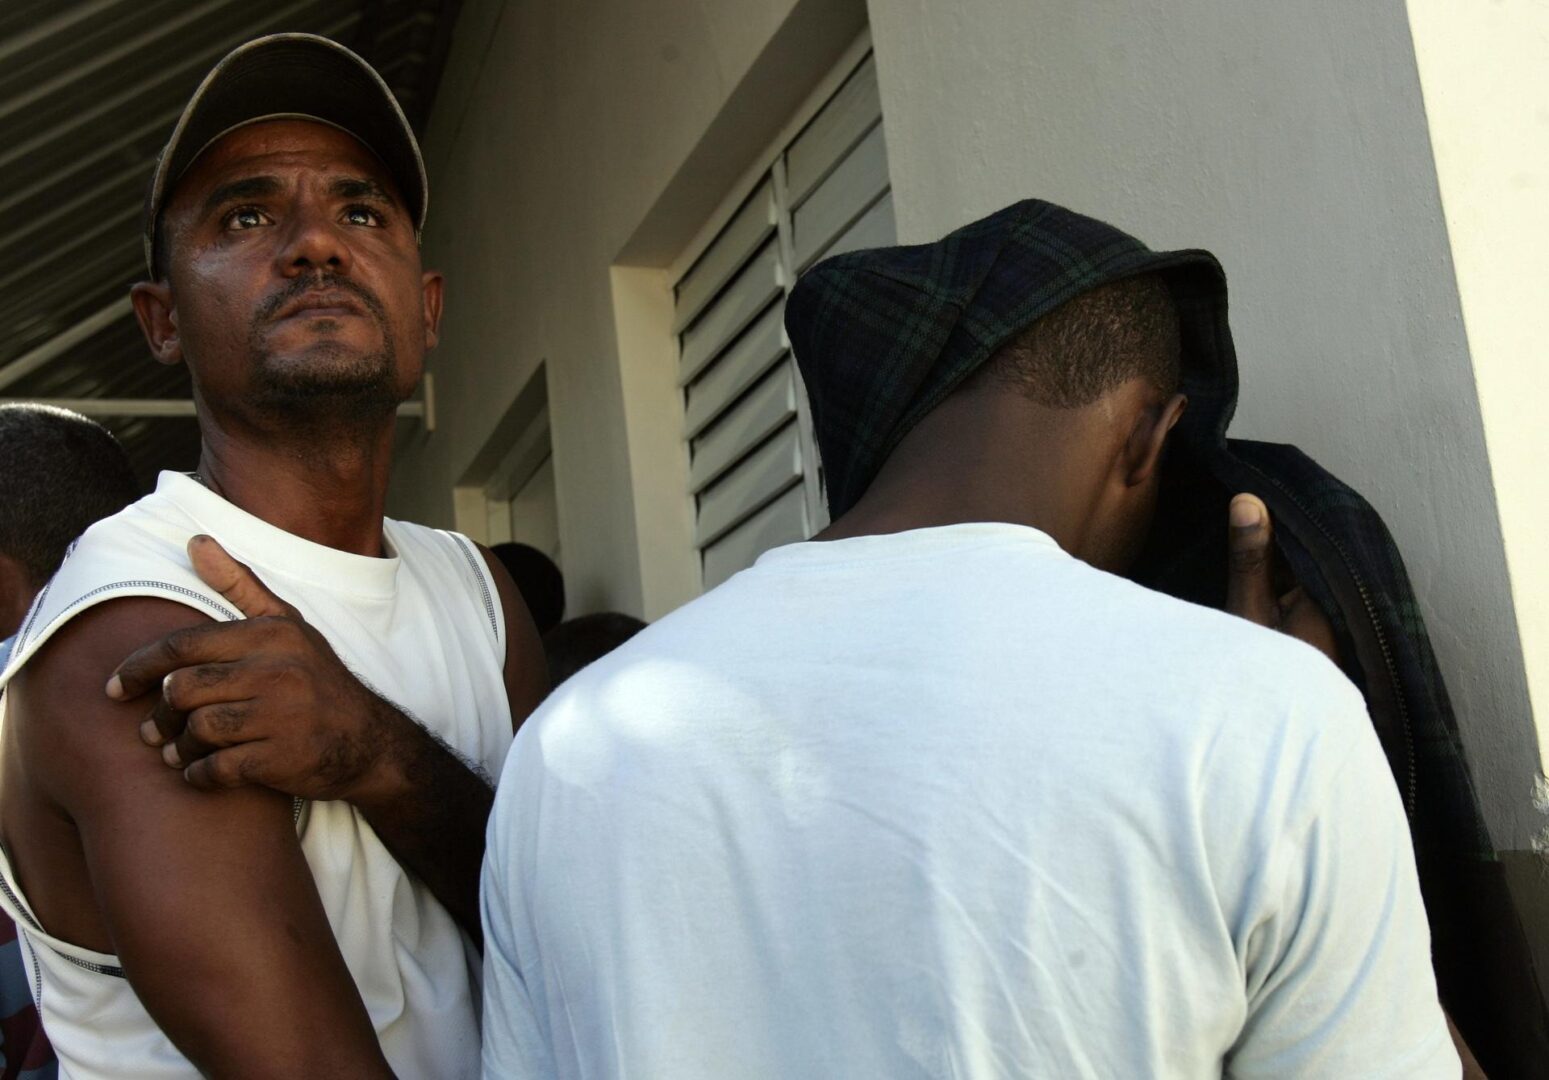 Detienen a 14 migrantes al lograr llegar ilegalmente en una embarcación a Puerto Rico